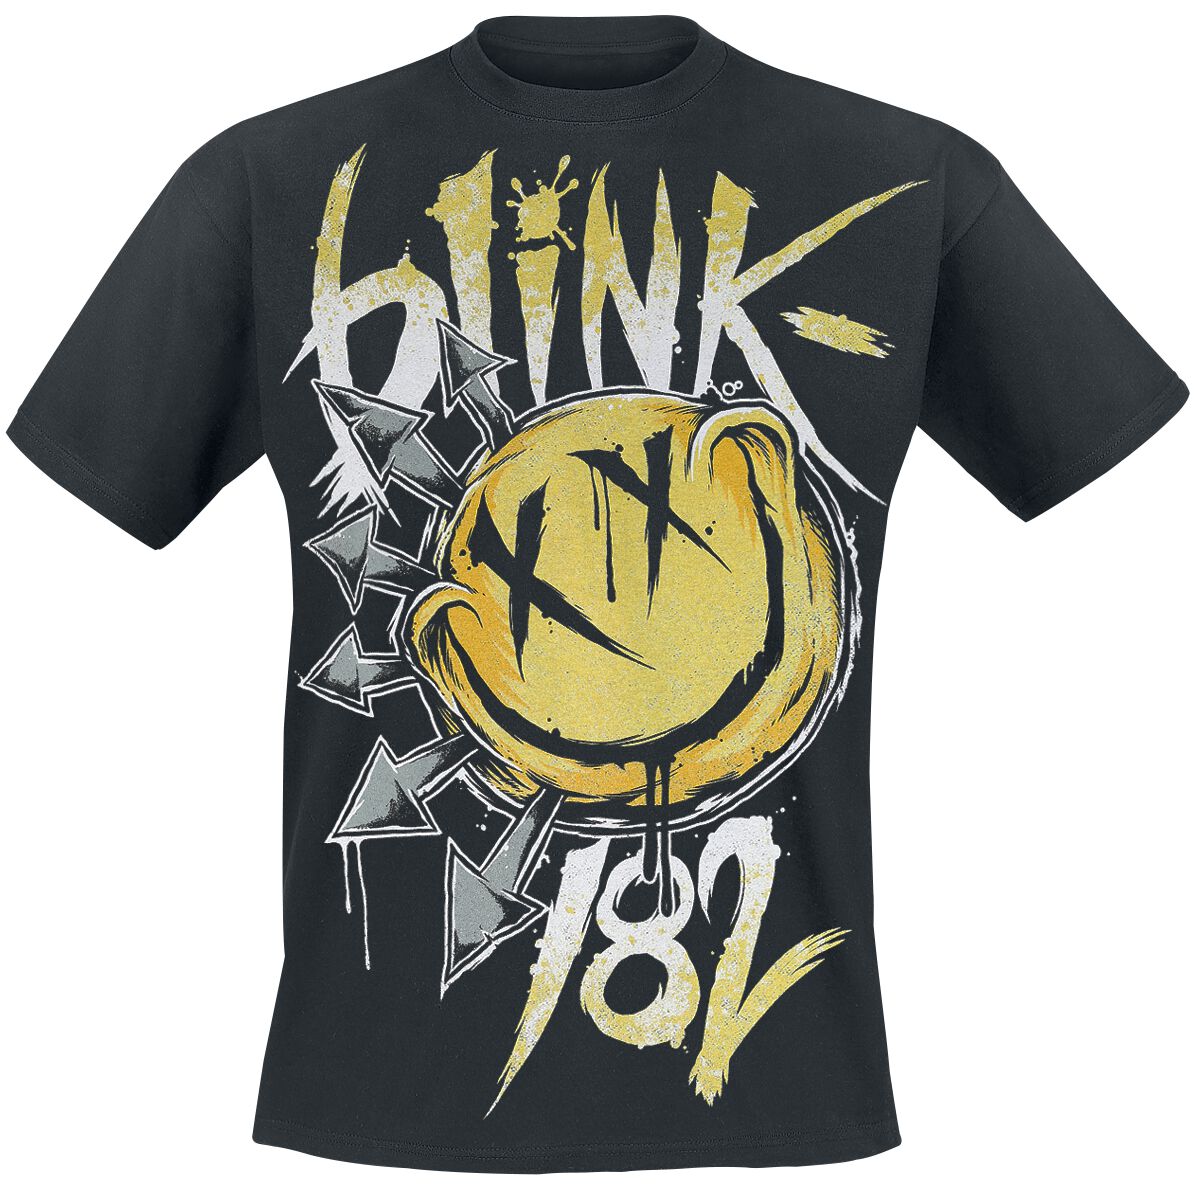 Blink-182 T-Shirt - Big Smile - S bis XXL - für Männer - Größe XXL - schwarz  - Lizenziertes Merchandise!